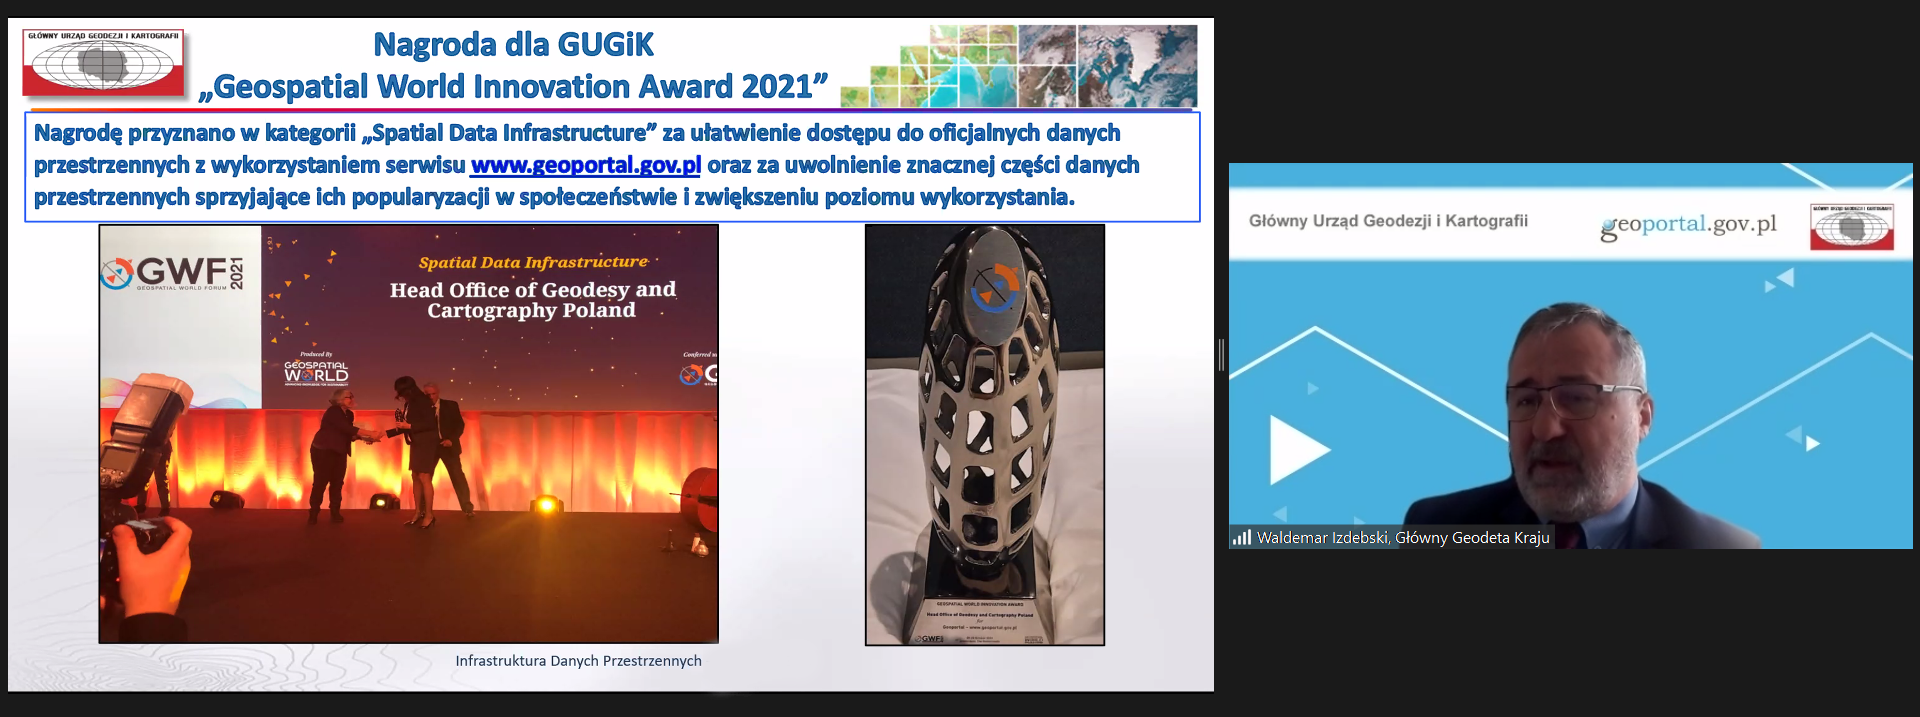 Zrzut ekranu z programu ZOOM. Po lewej fragment przentacji, przedstawiający otrzymanie przez GUGiK Geospatial World Award 2021, a po prawej rozpoczynający szkolenie Główny Geodeta Kraju - dr hab. inż. Waldemar Izdebski.